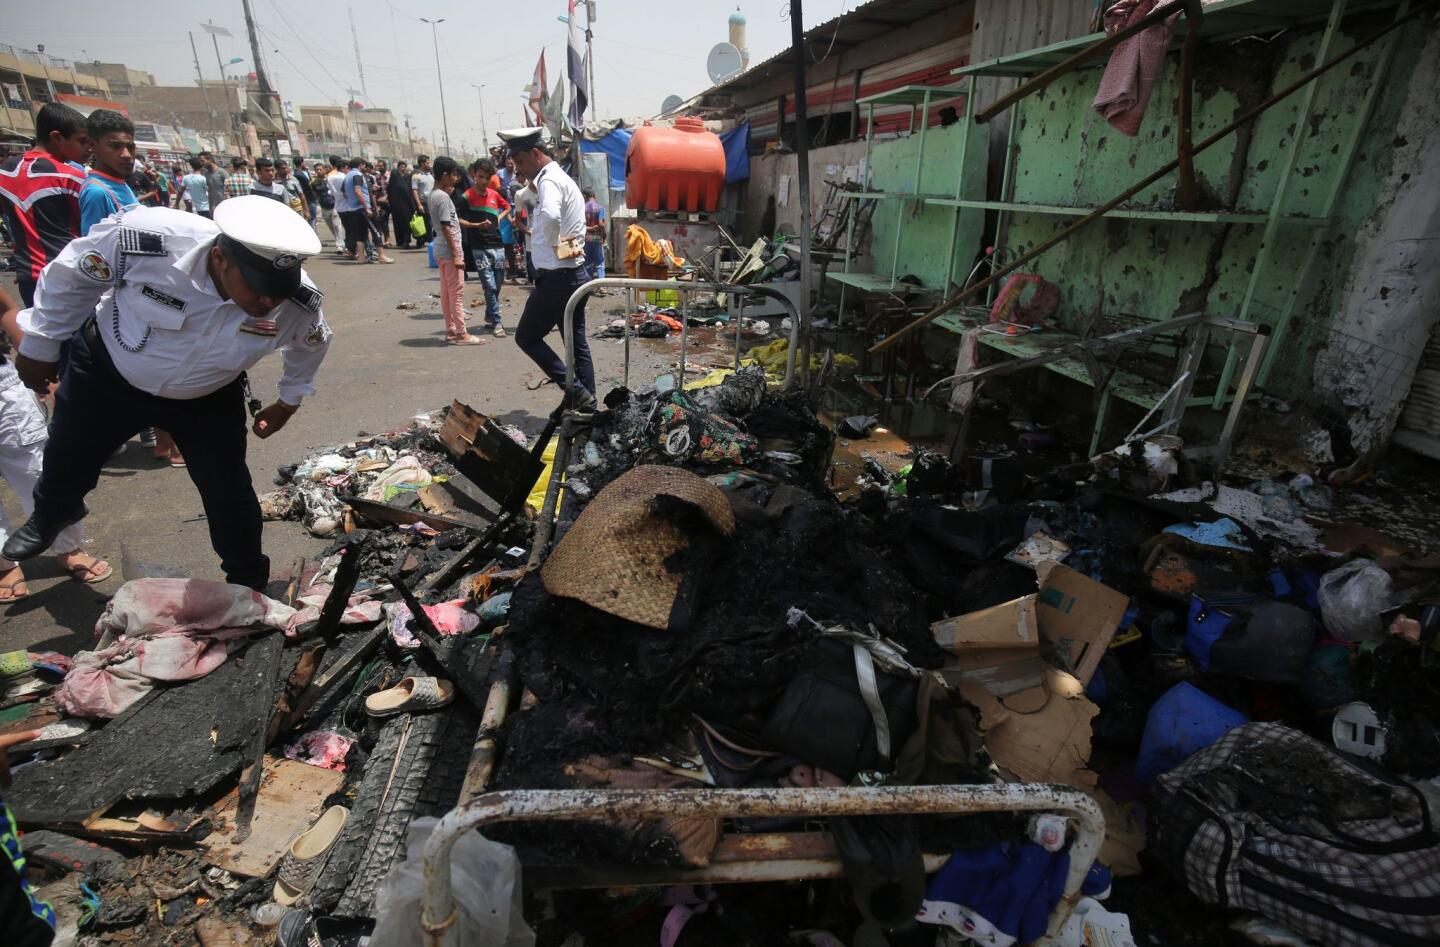 Car bombing in Sadr City, Iraq